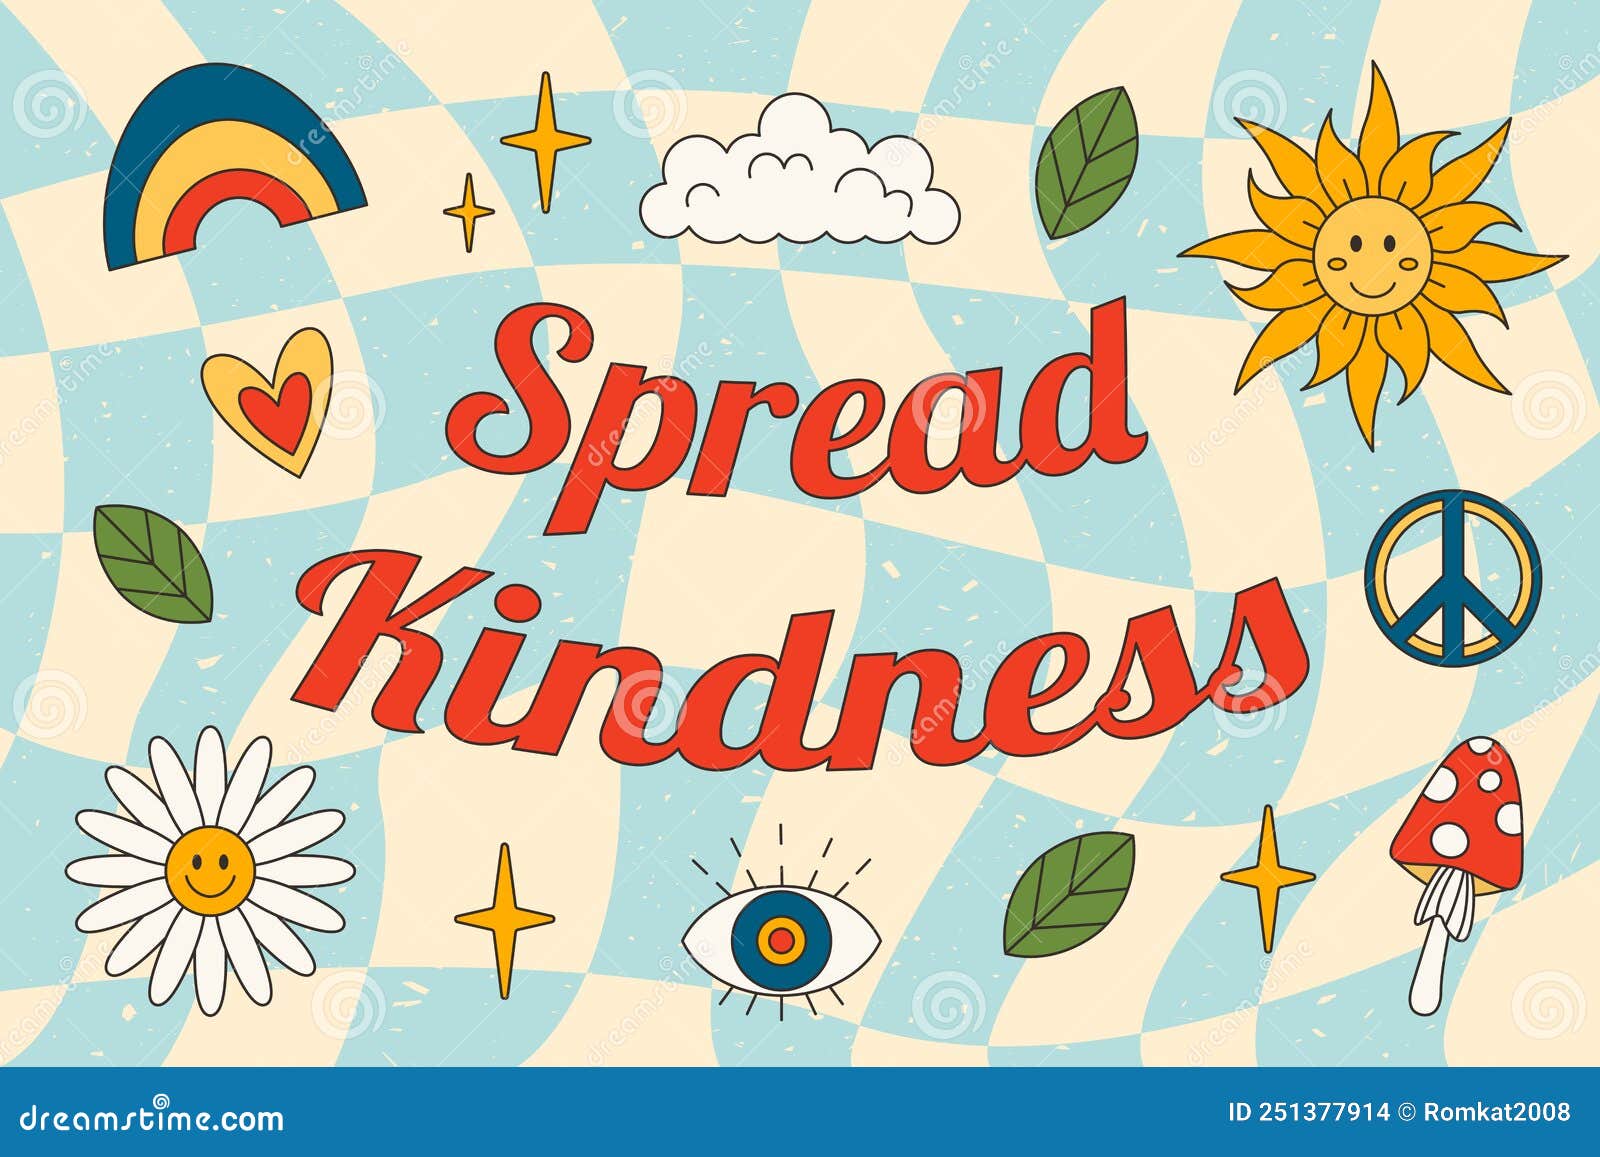 1970-1979 retro spread kindness slogan in hippie style